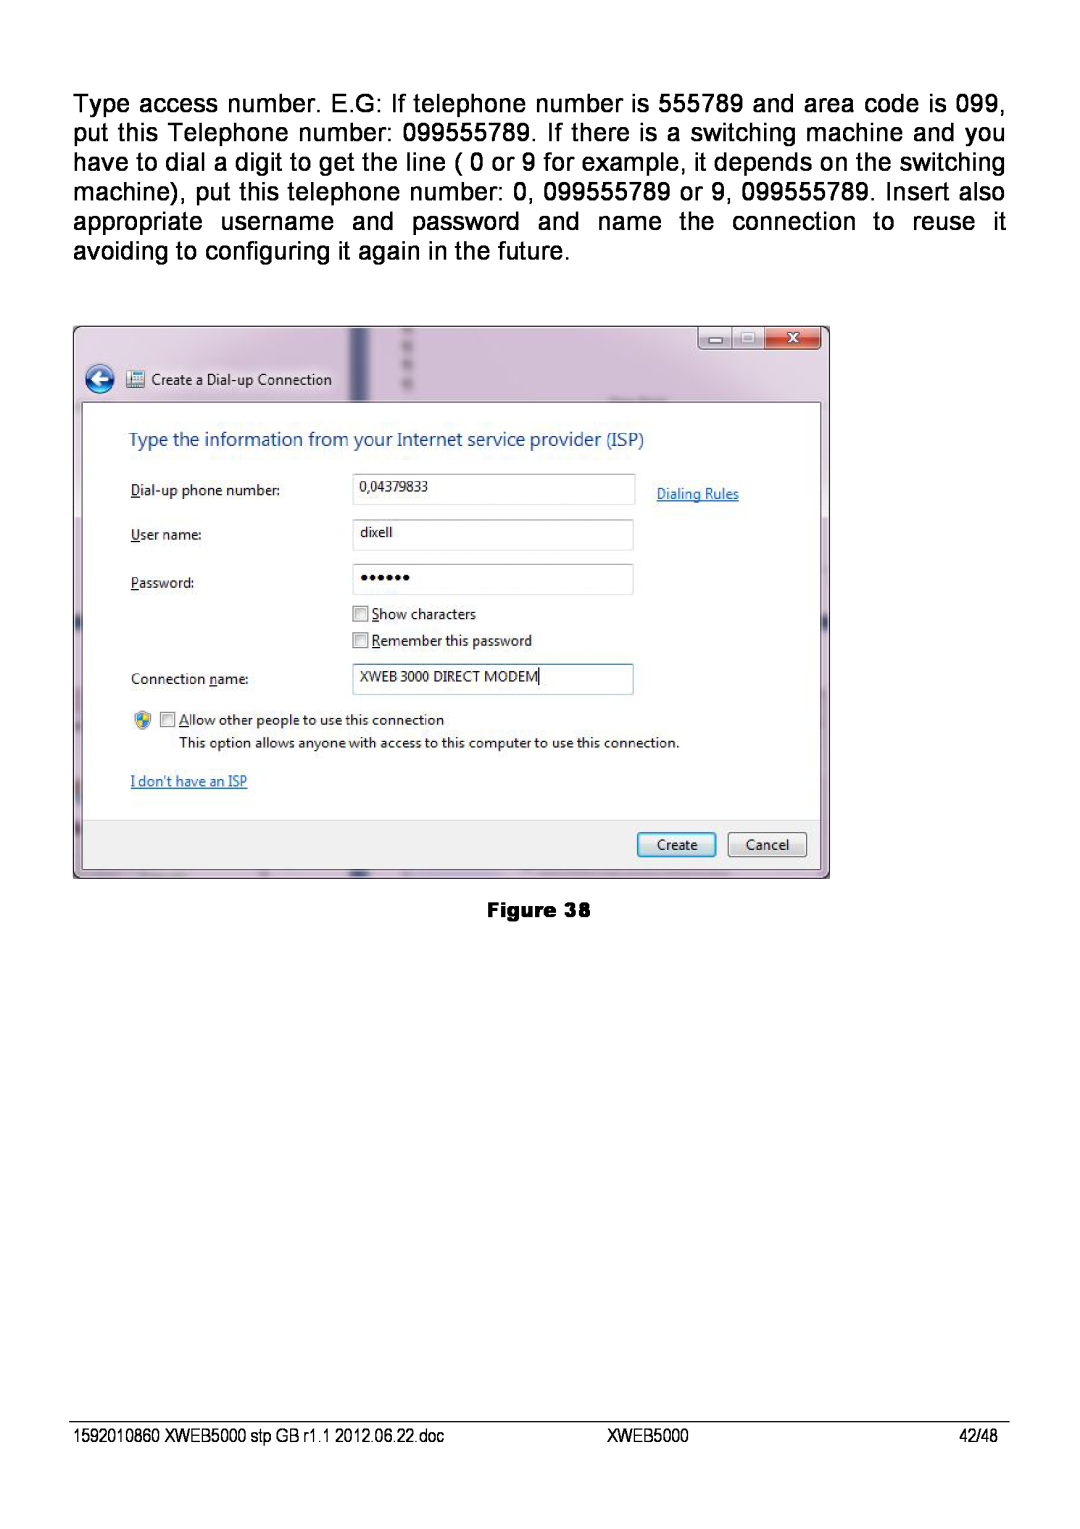 Emerson manual XWEB5000 stp GB r1.1 2012.06.22.doc, 42/48 